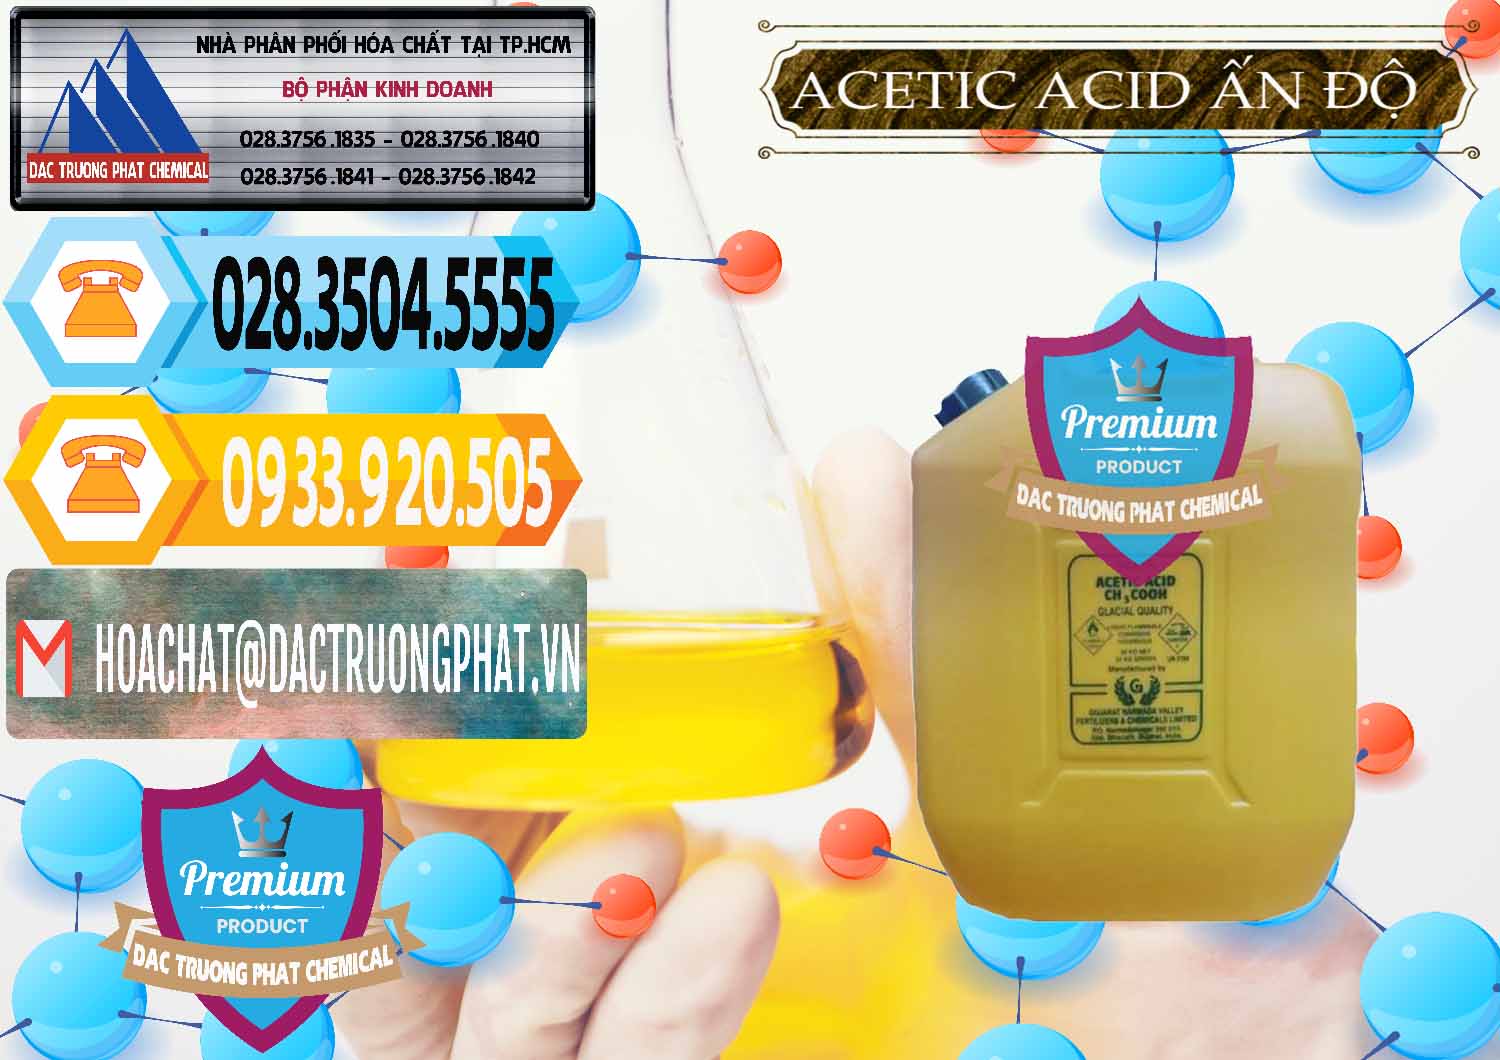 Cty kinh doanh - bán Acetic Acid – Axit Acetic Ấn Độ India - 0359 - Công ty chuyên cung cấp - nhập khẩu hóa chất tại TP.HCM - hoachattayrua.net